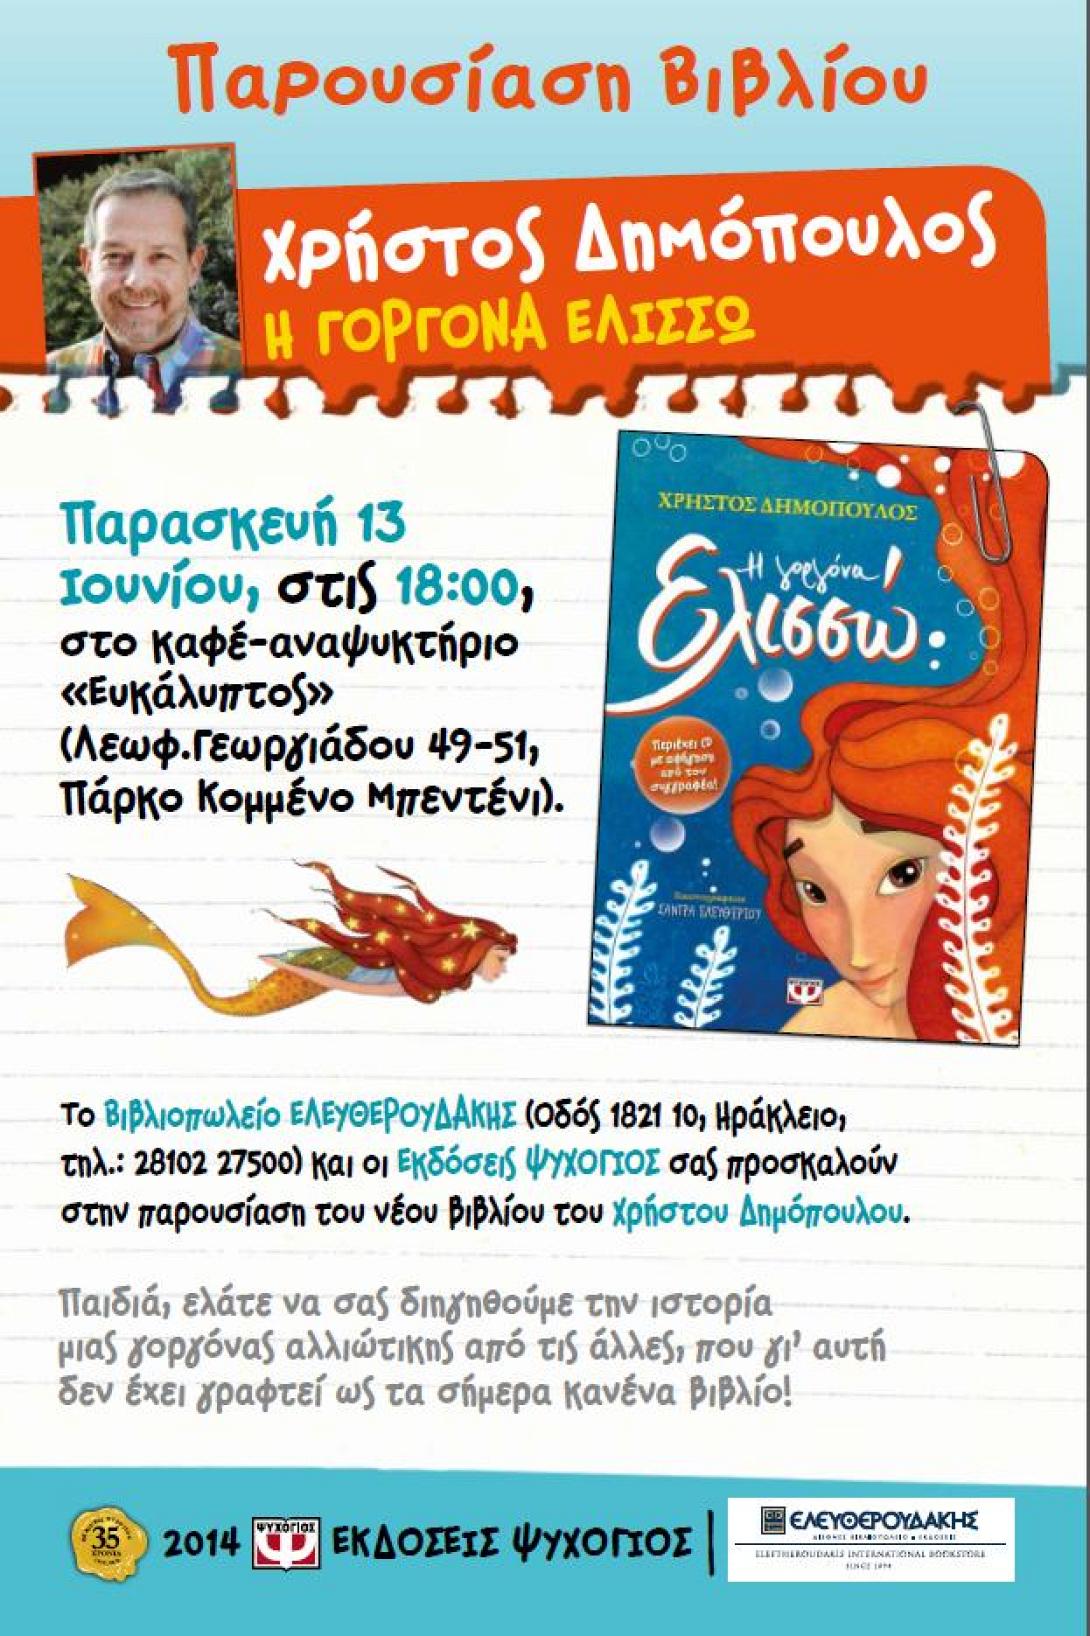 Ηράκλειο: Ο Χρήστος Δημόπουλος παρουσιάζει το βιβλίο του 